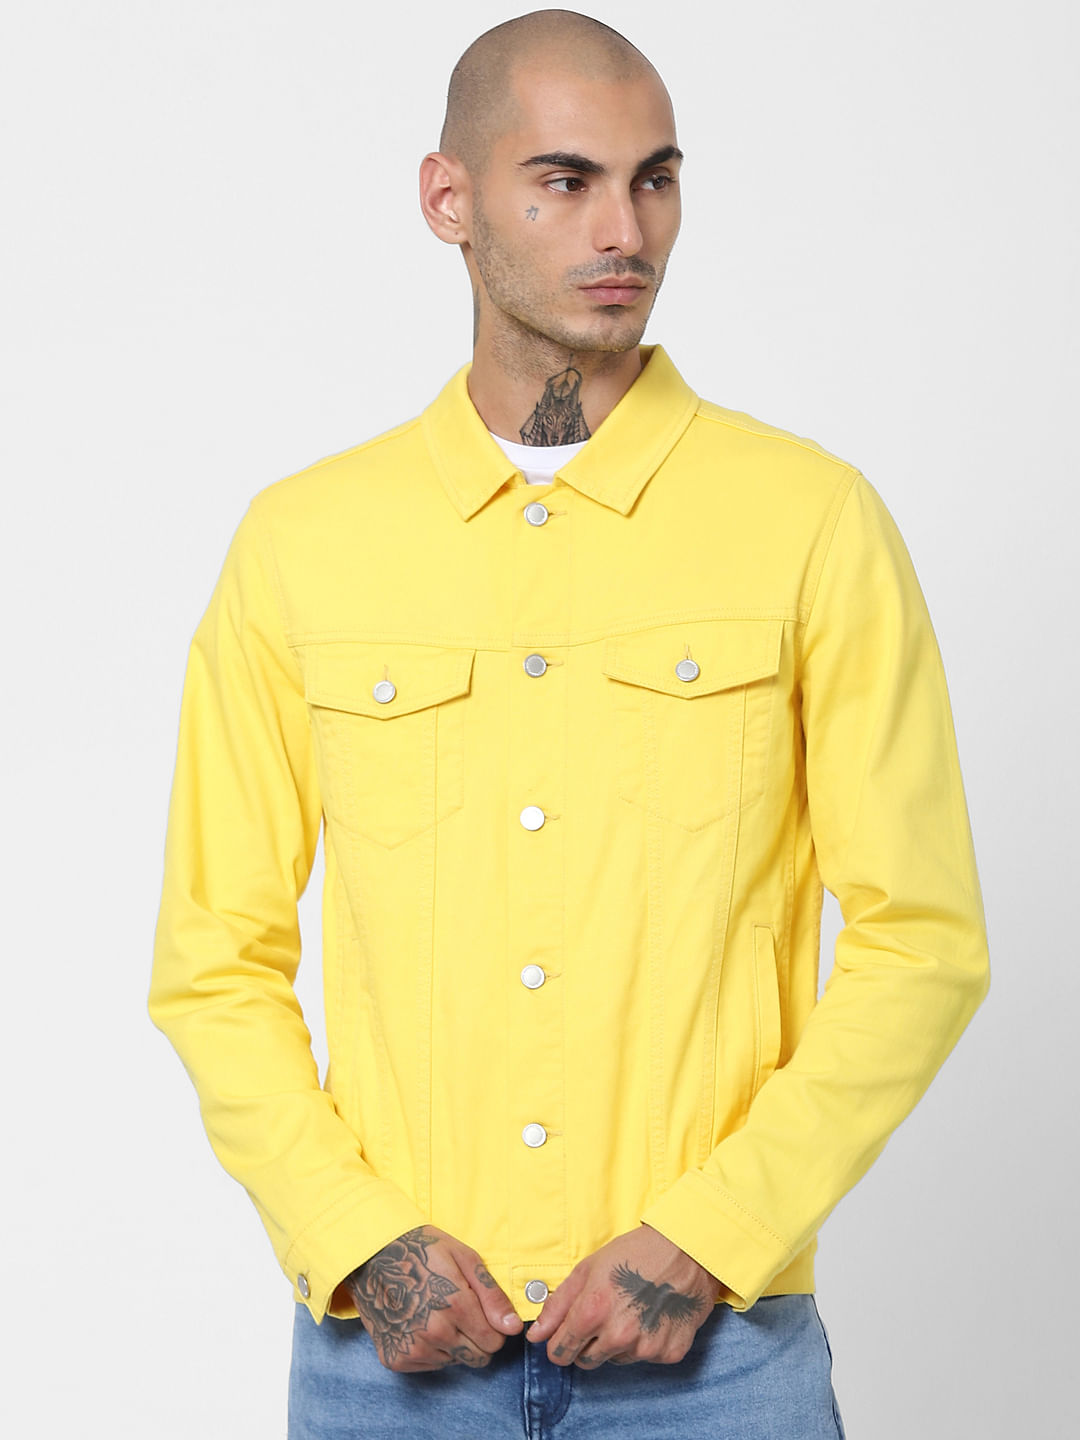 Plain Men Yellow Denim Shirt, Regular Fit at Rs 350 in New Delhi | ID:  2851882432555